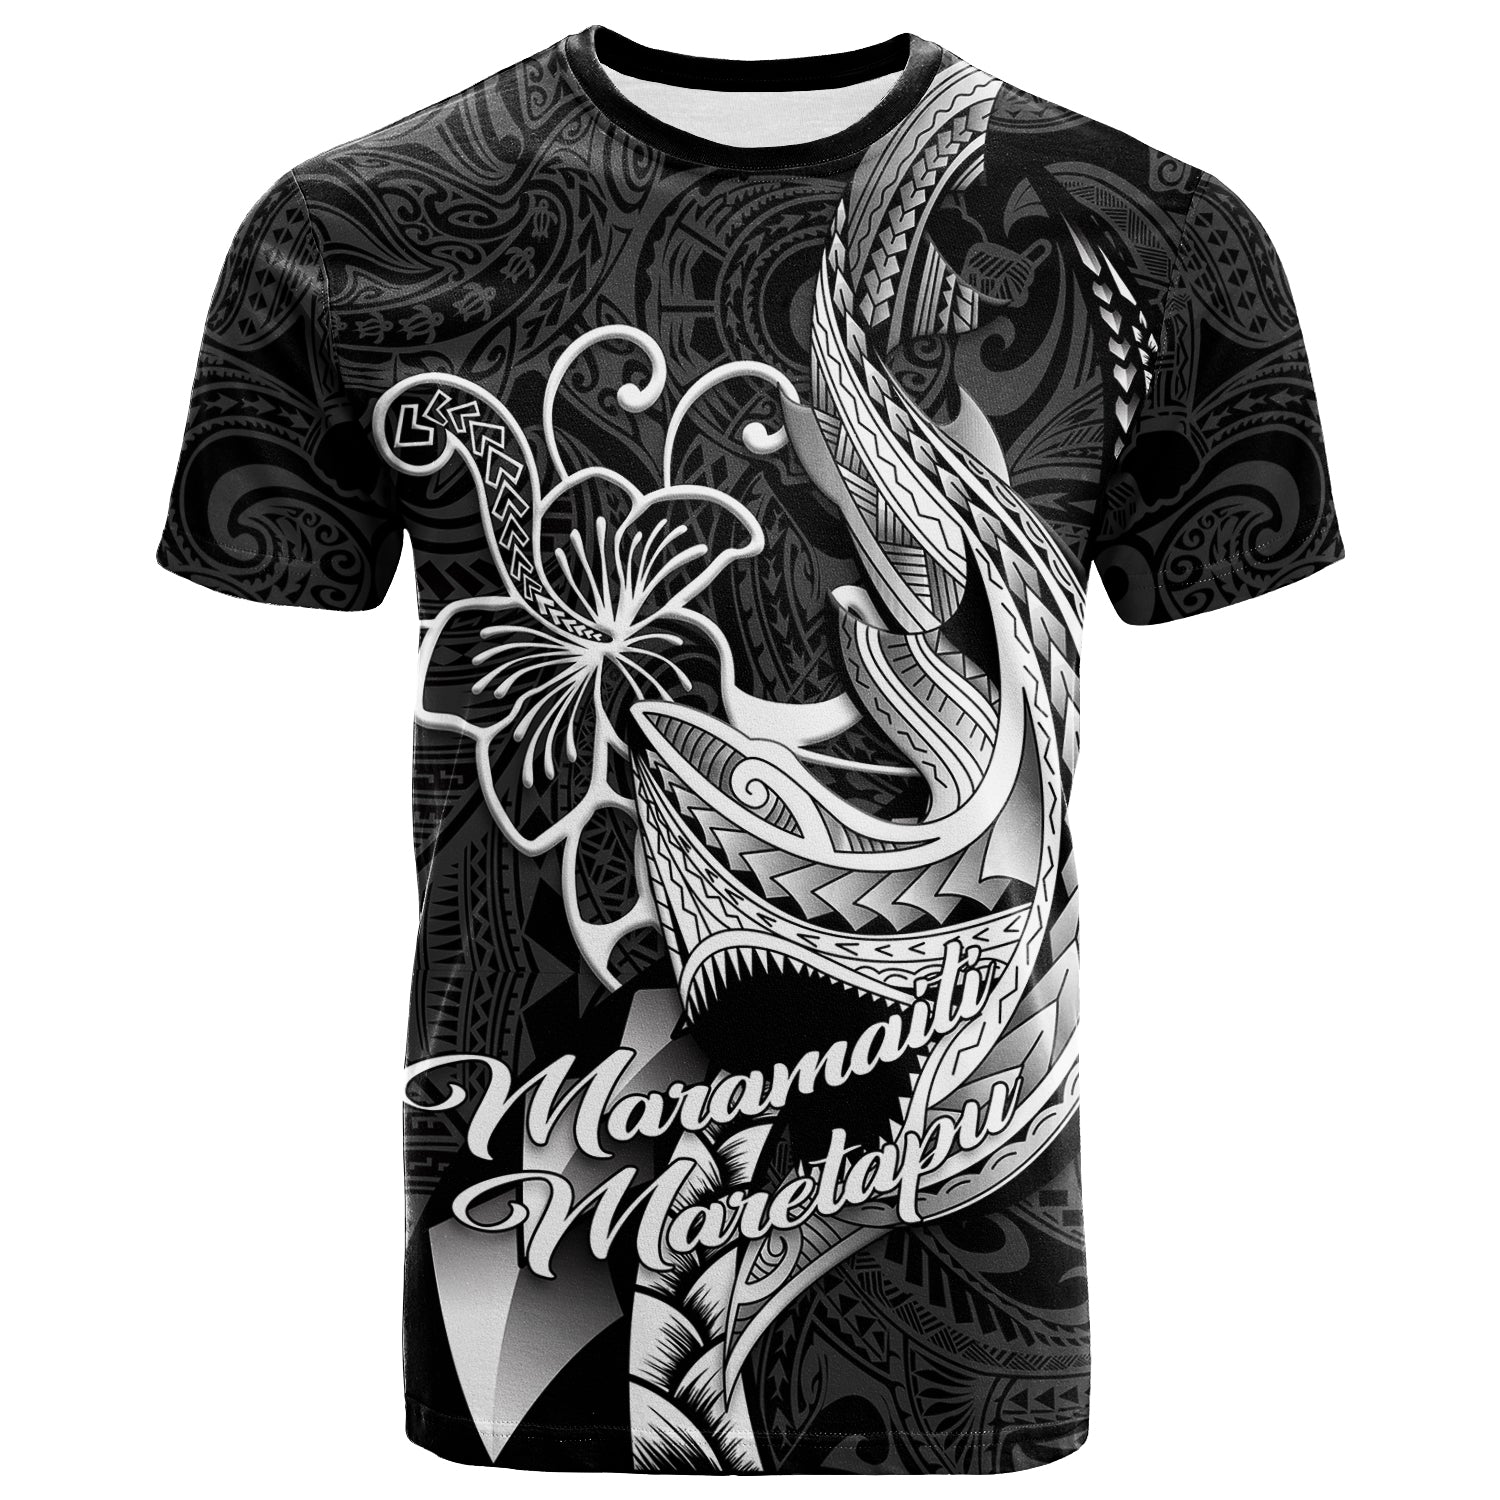 Maramaiti Maretapu - Polynesian Shark Tattoo Hawaii Tribal T-Shirt Kid - LT12 - Polynesian Pride